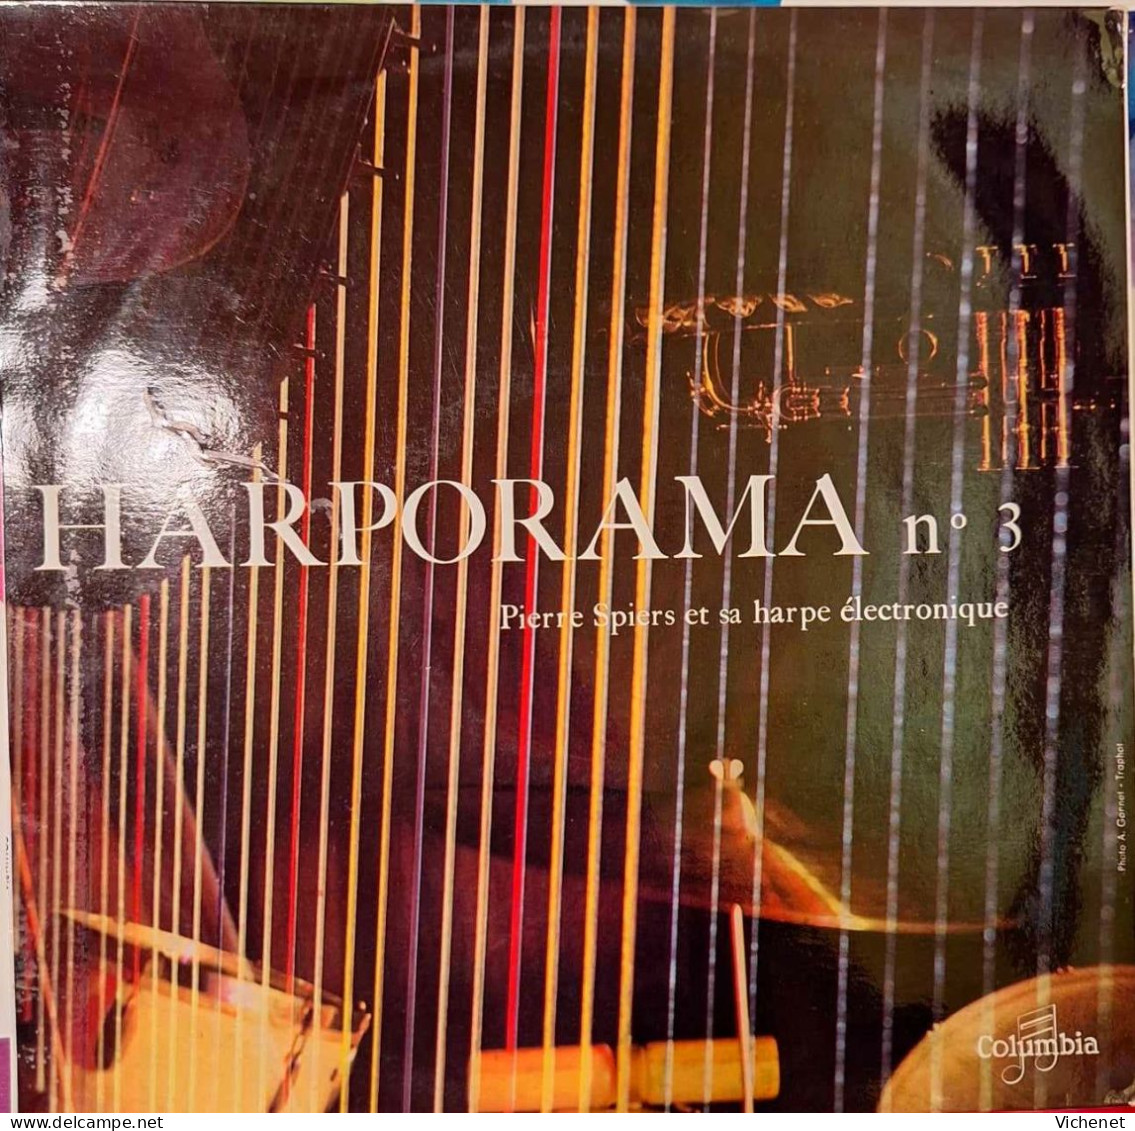 Pierre Spiers Et Sa Harpe Electronique - Harporama N° 3 - 25 Cm - Special Formats